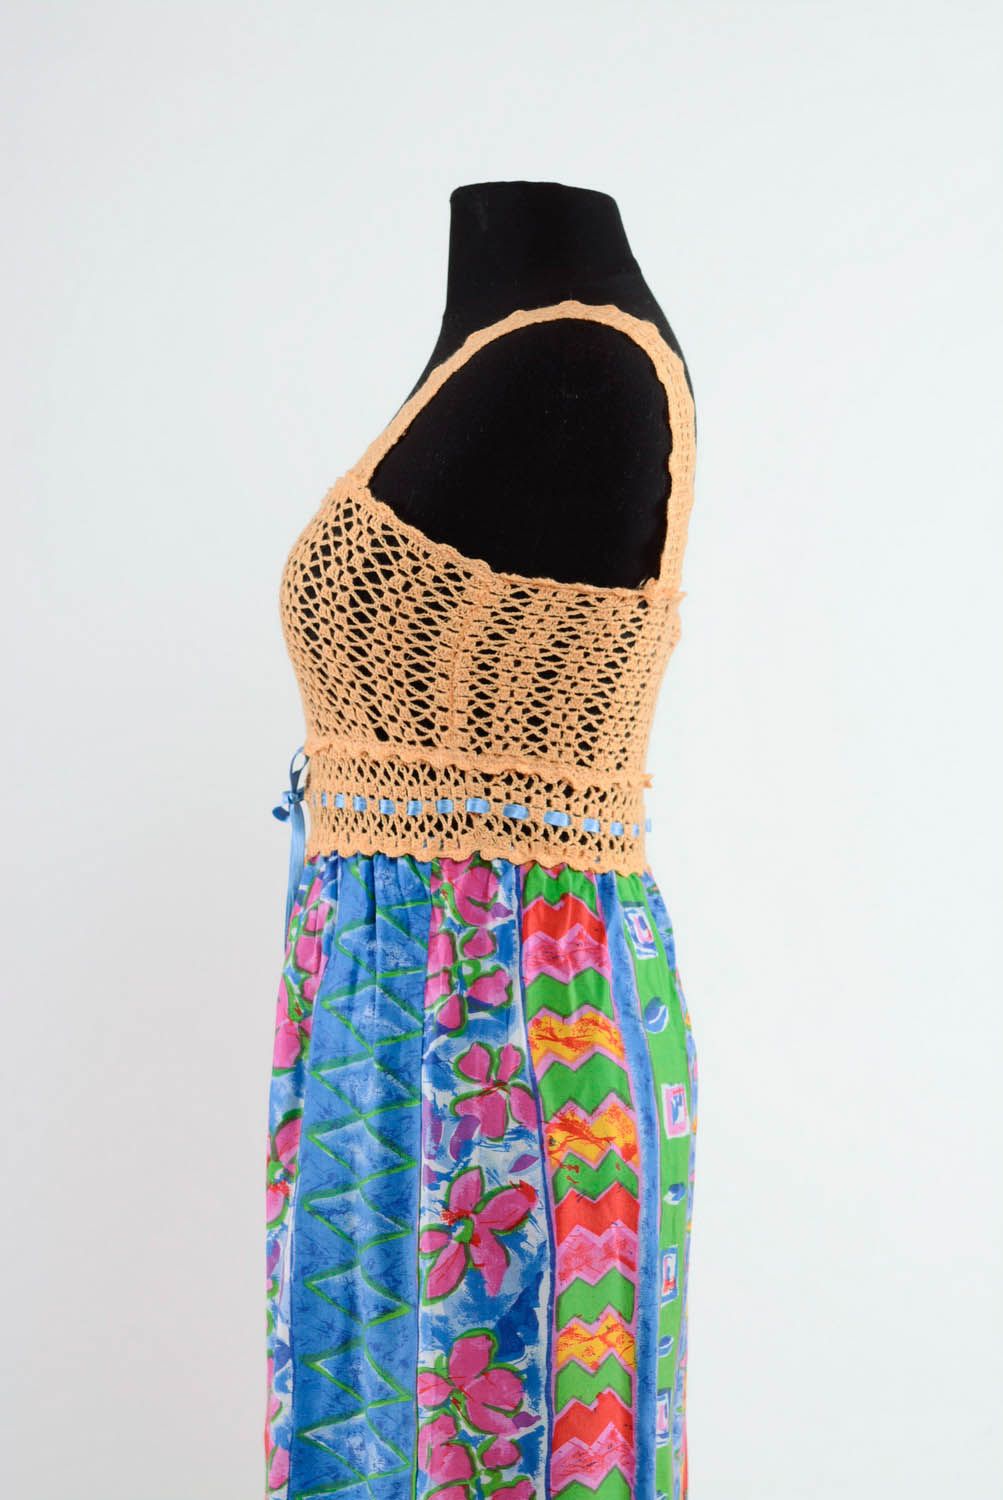 Robe multicolore en acrylique tricotée à main photo 3